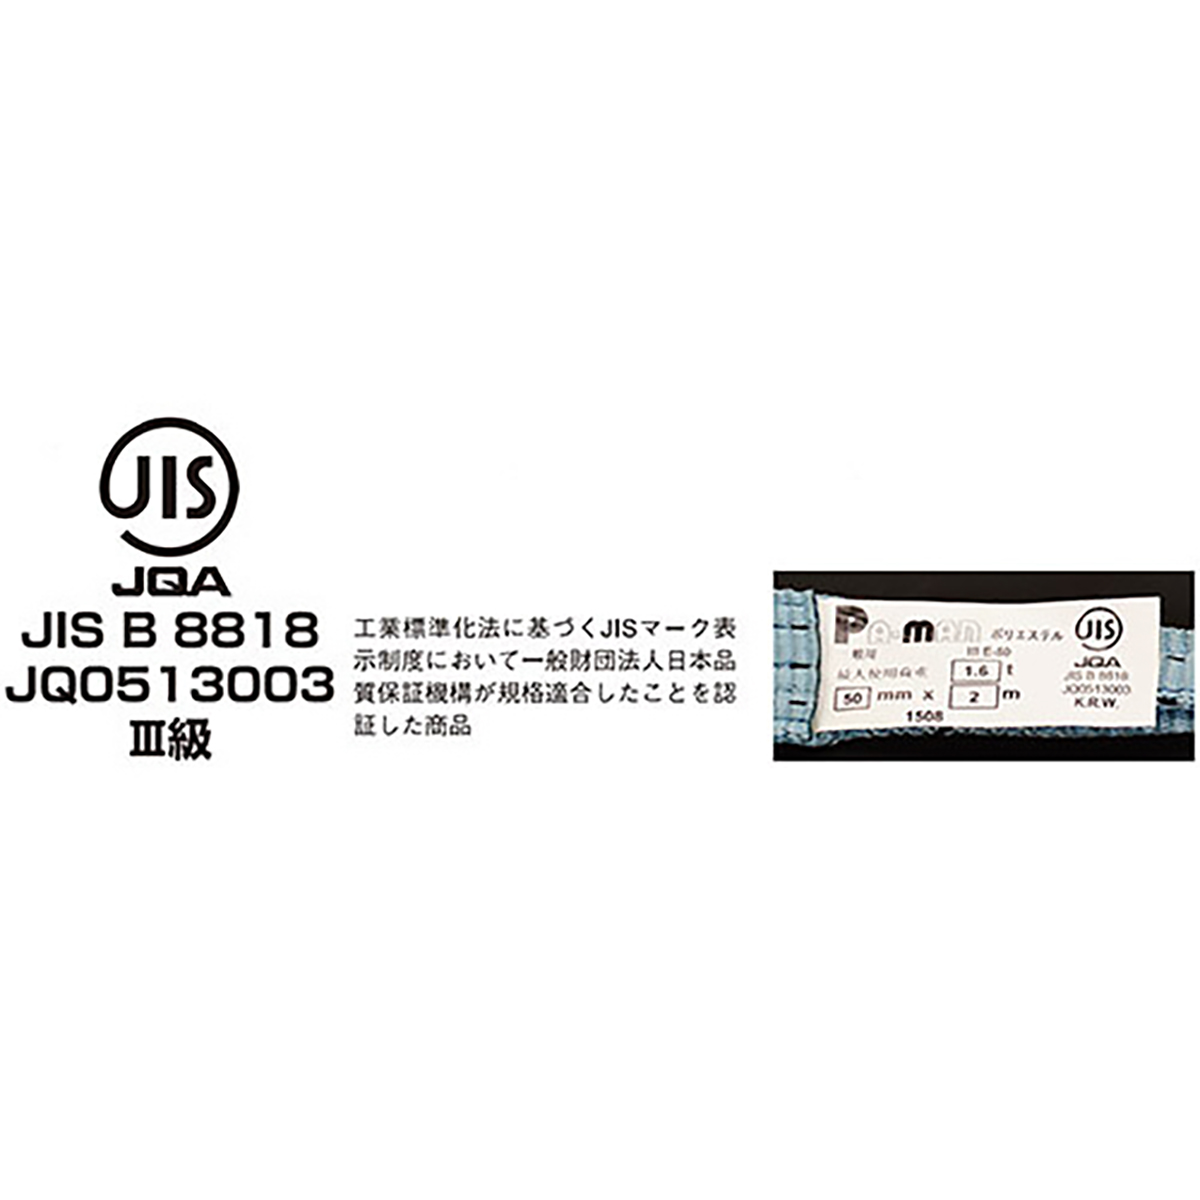 ポリベルトスリング JIS III級 ソフト面付 巾75mm 6m 1本